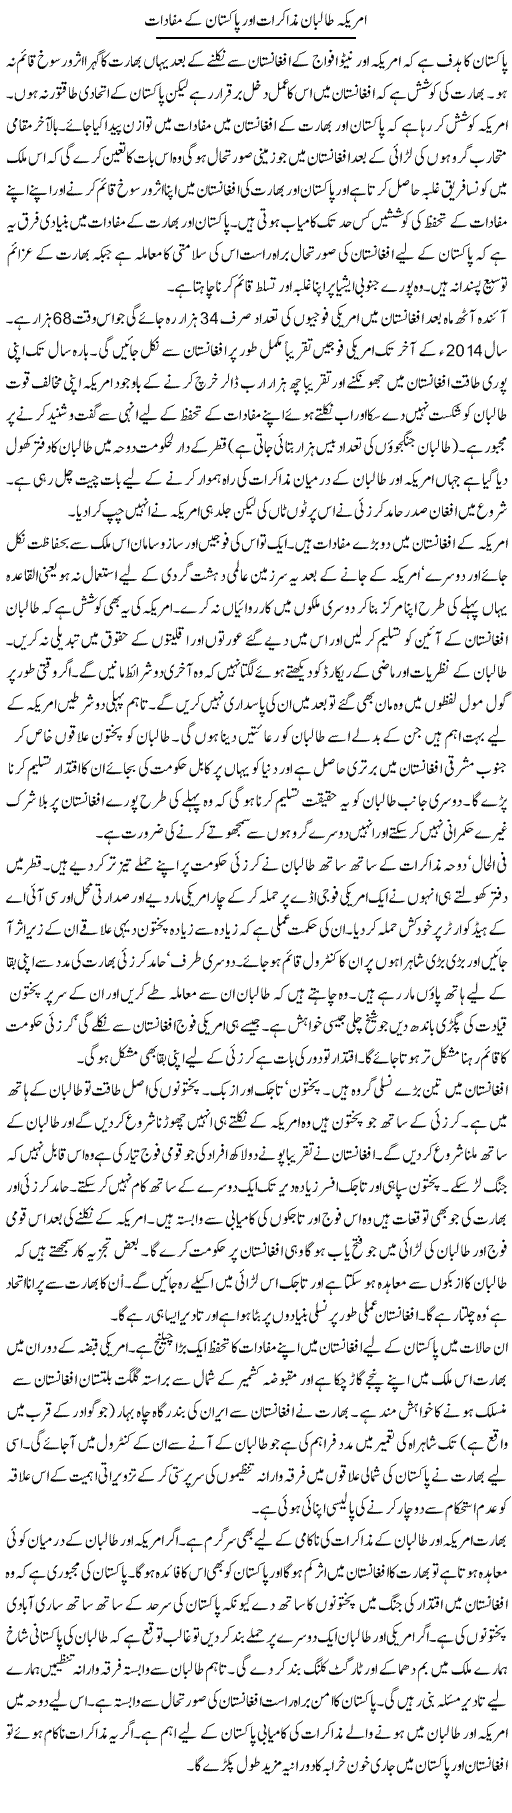 Amrika Taliban Muzakrat Our Pakistan K Mufadaat | Adnan Adil Zaidi | Daily Urdu Columns